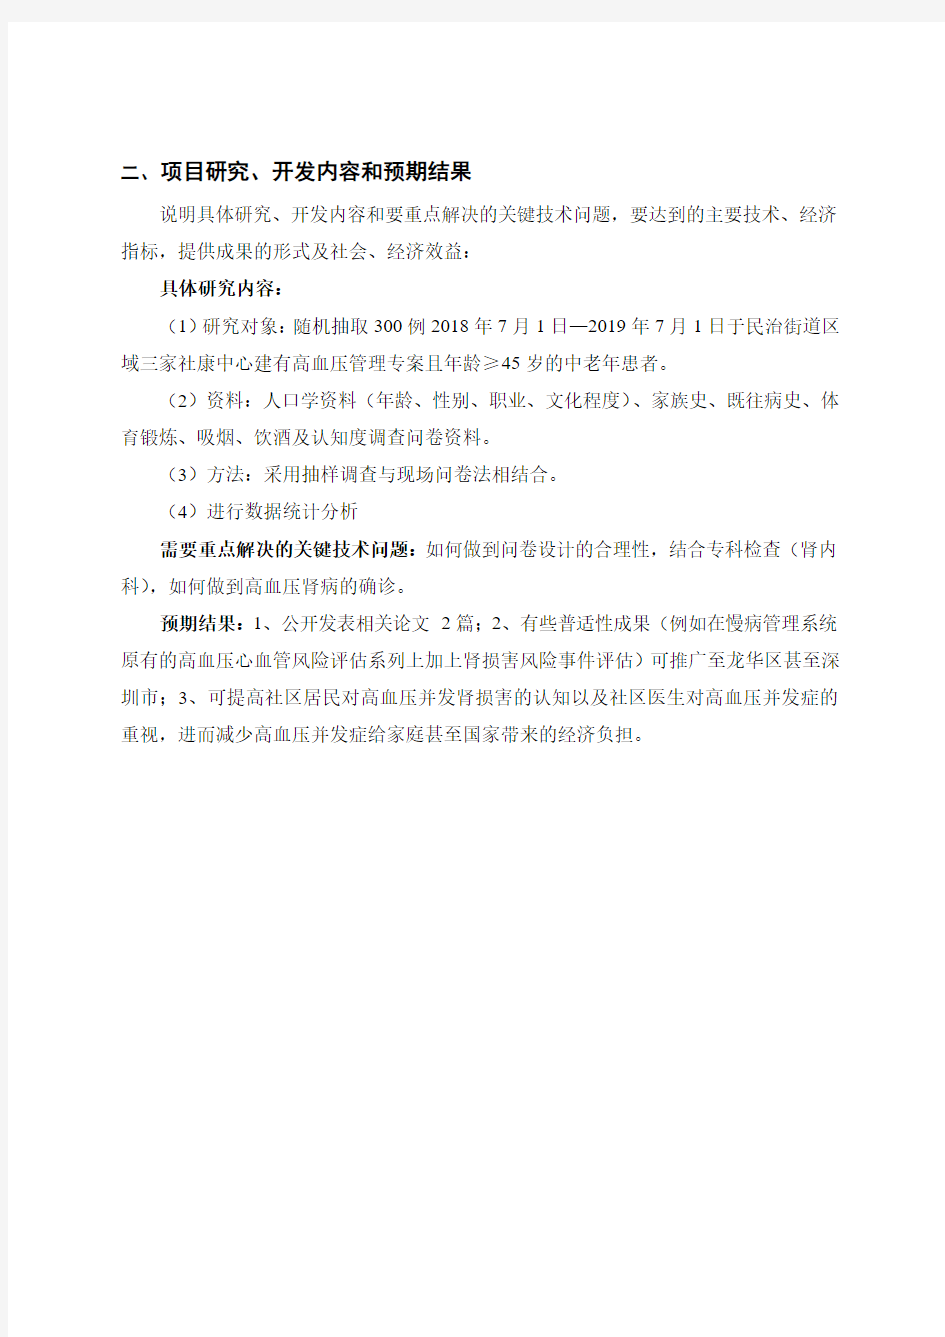 深圳市卫生计生系统科研项目可行性研究报告 (王大明)